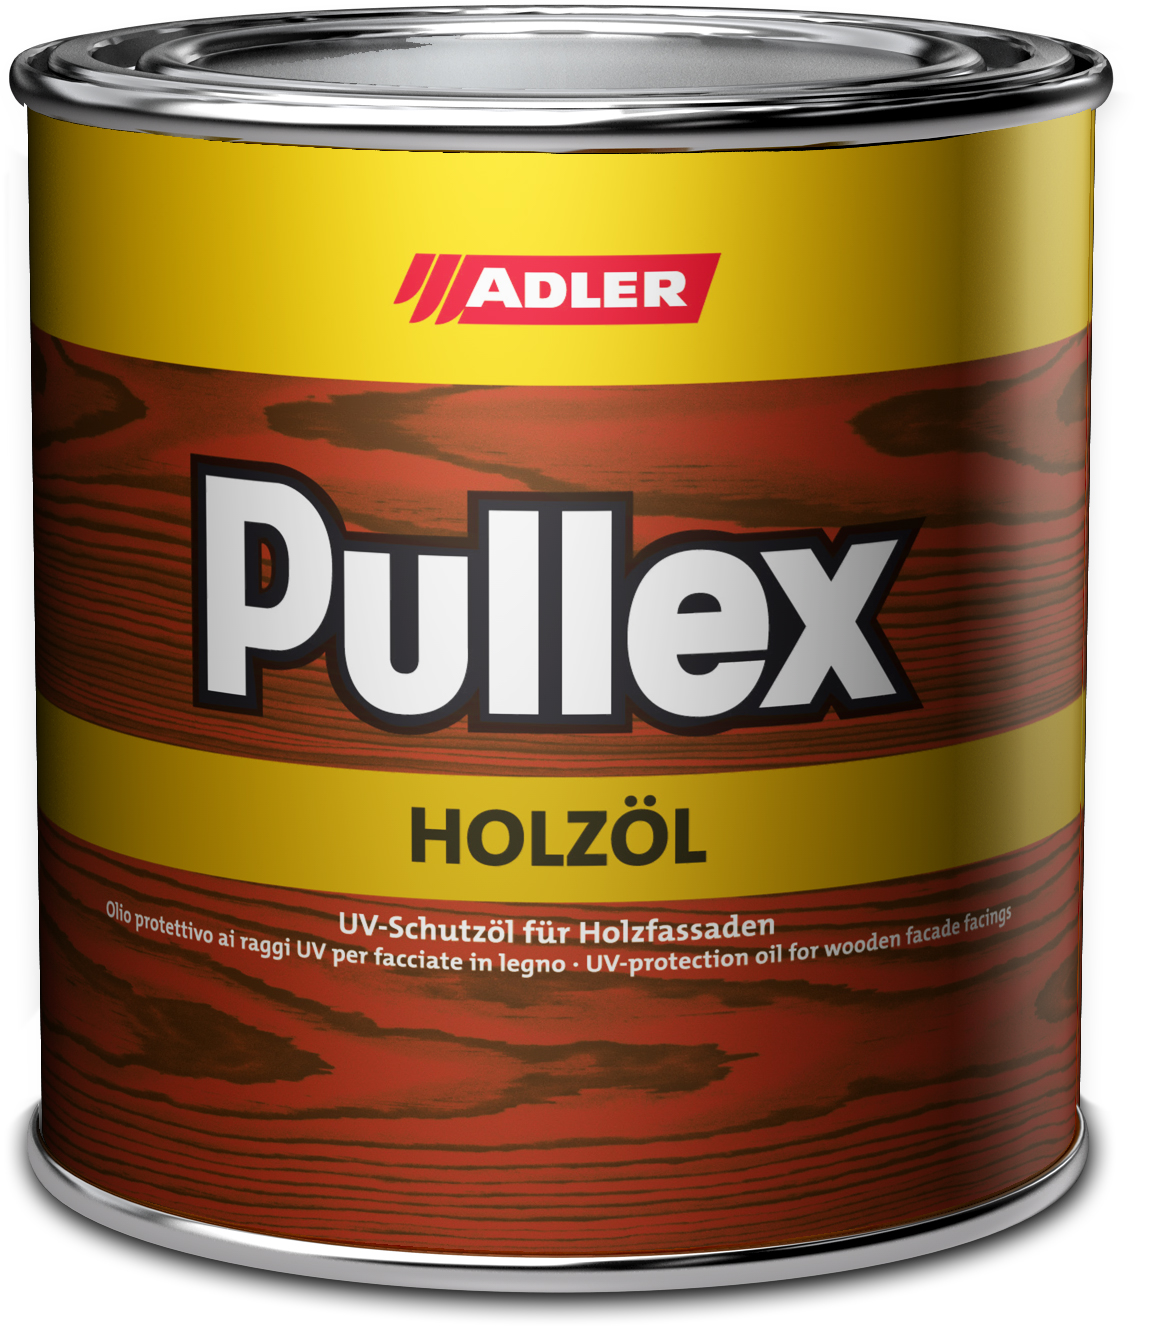 ADLER PULLEX HOLZÖL - UV ochranný olej na drevodomy a drevené obloženie ST 01/3 - oh la la! 0,75 L